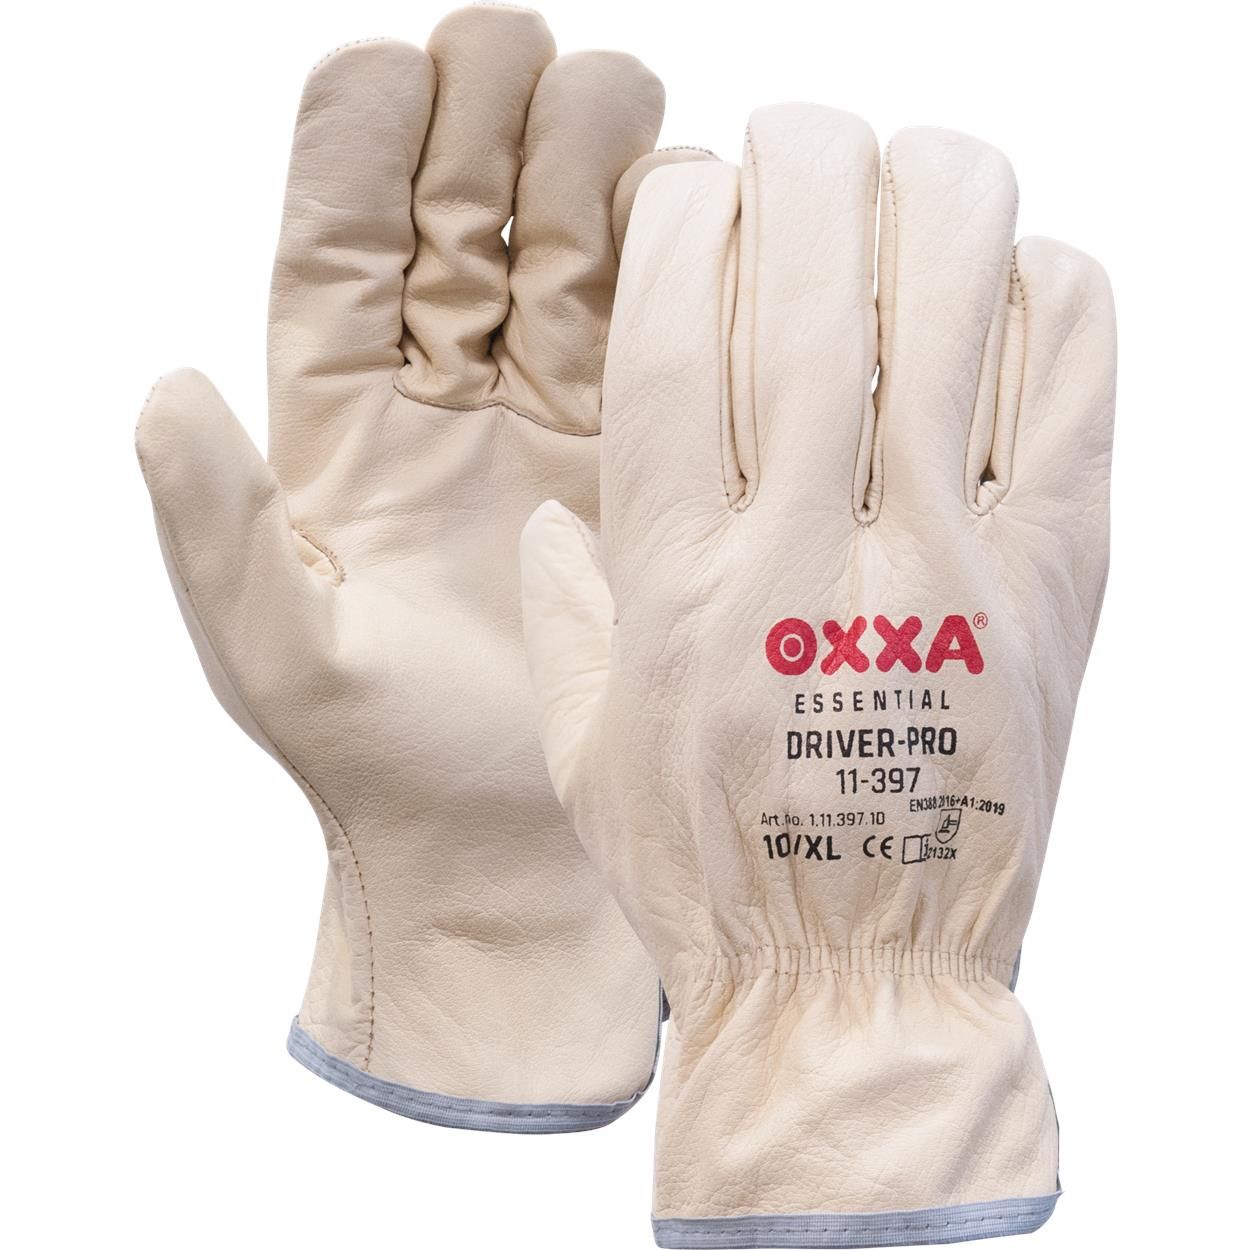 OXXA Driver-Pro 11-397 werkhandschoenen